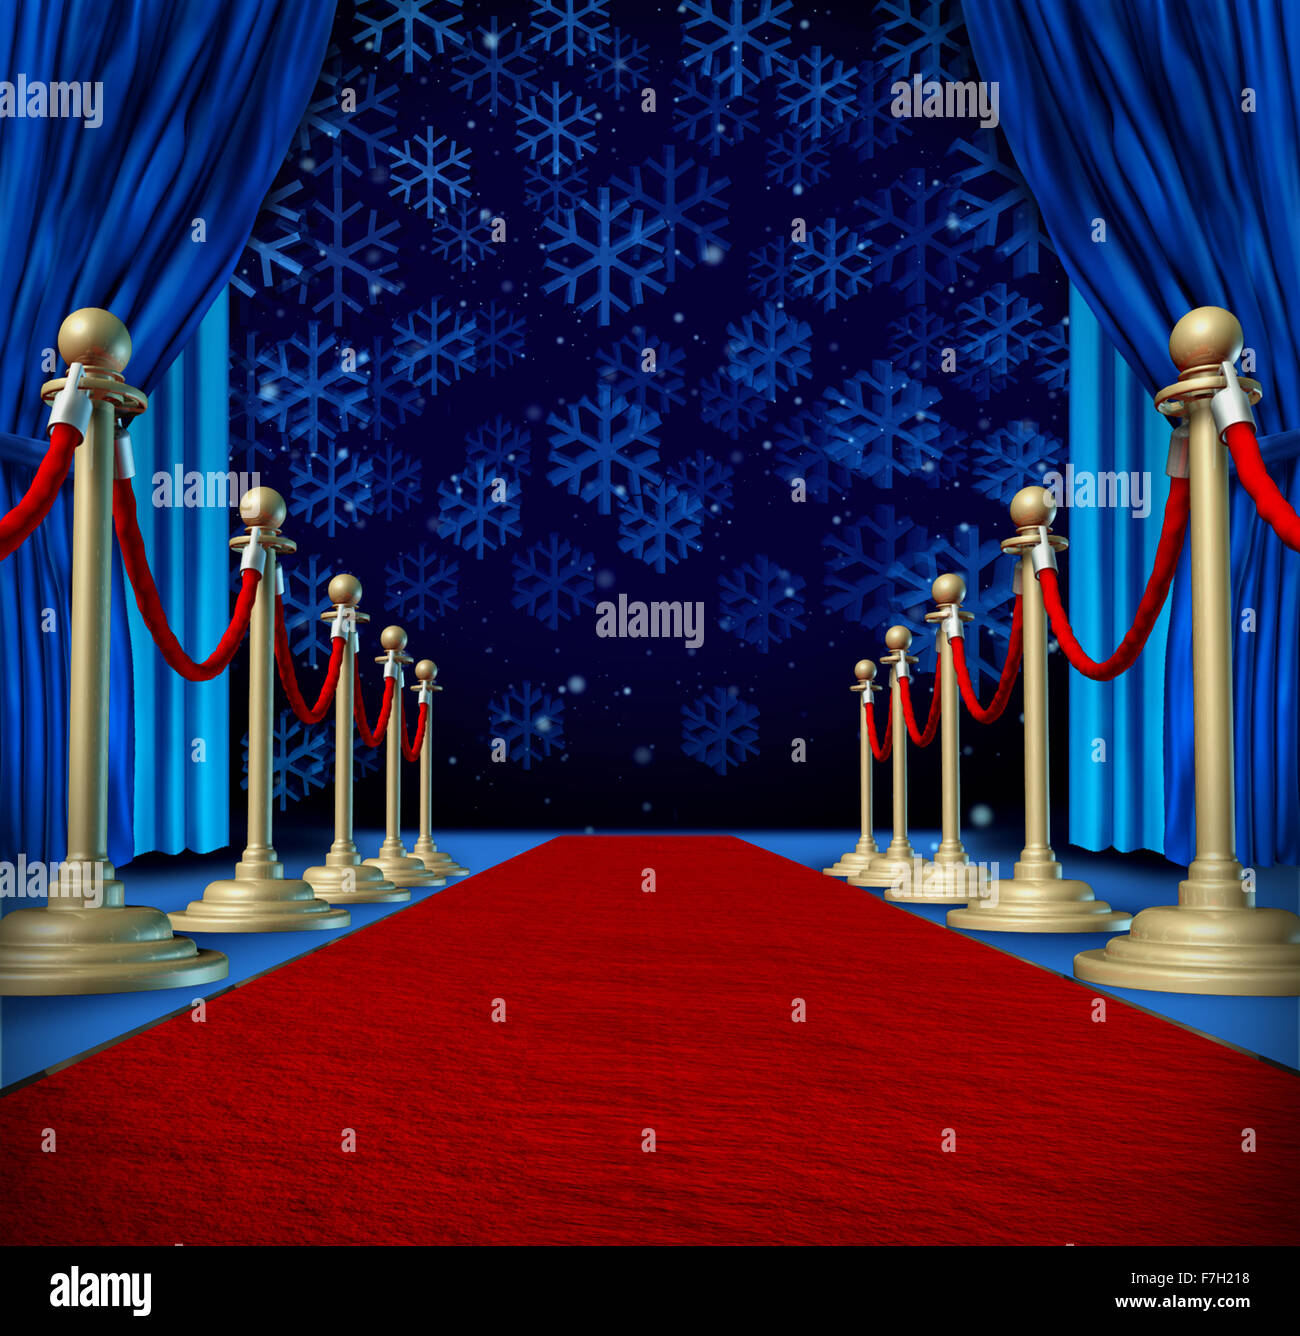 Winter-roter Teppich-Hintergrund als Laufsteg oder Start-und Landebahn in einem Auditorium Stadium mit Schneeflocken fallen als saisonale Urlaub Feier für Newyear Marketing oder Promotion mit Exemplar. Stockfoto